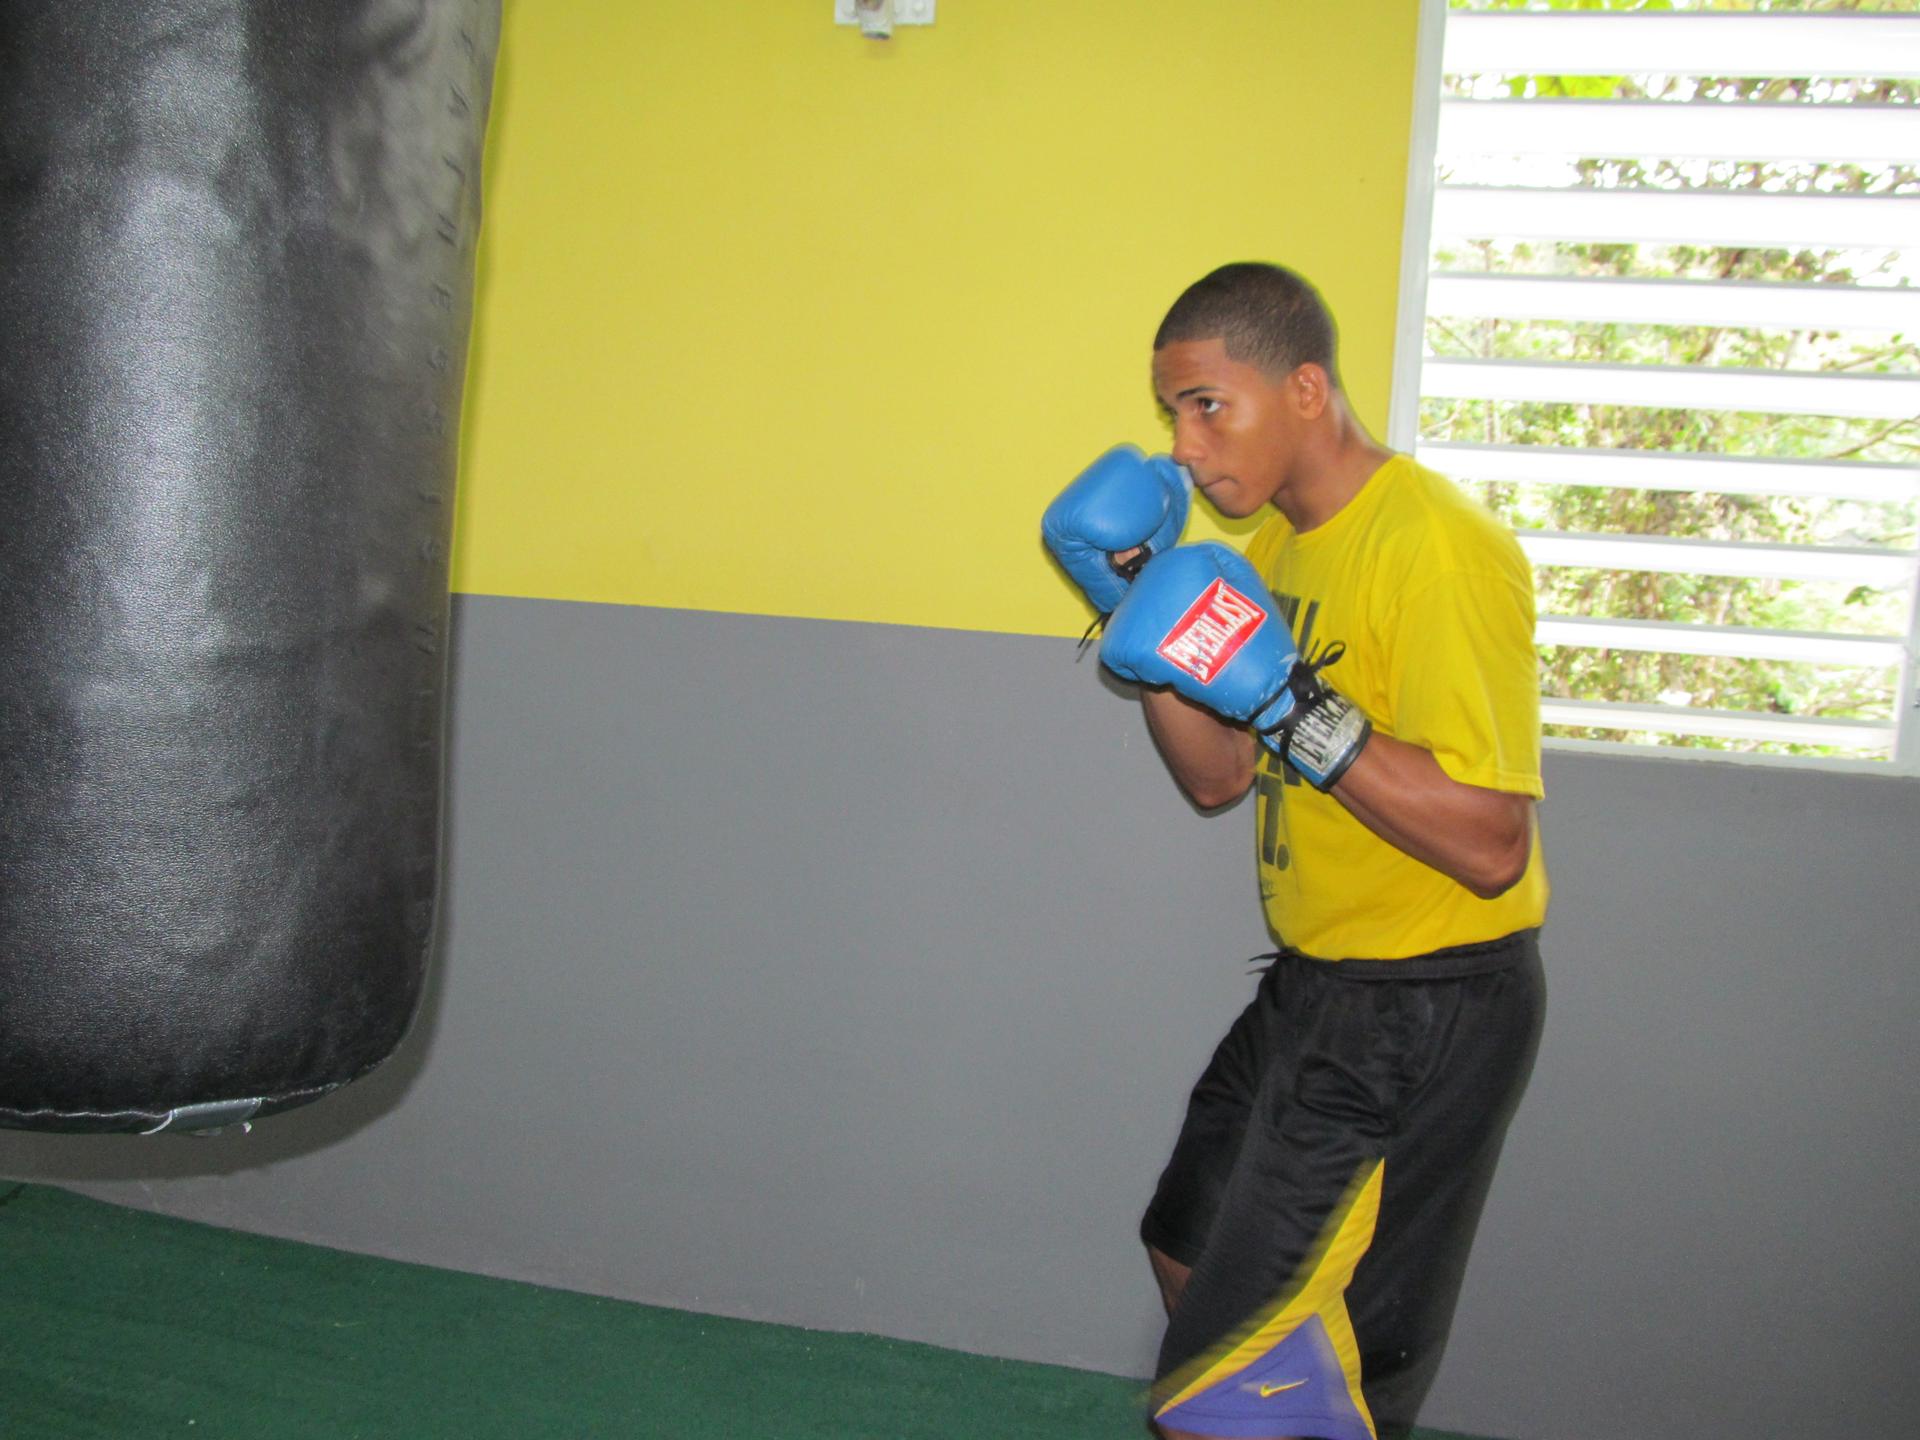 Fotografía de archivo donde aparece el boxeador puertorriqueño Félix Verdejo. EFE/Jorge J. Muñiz